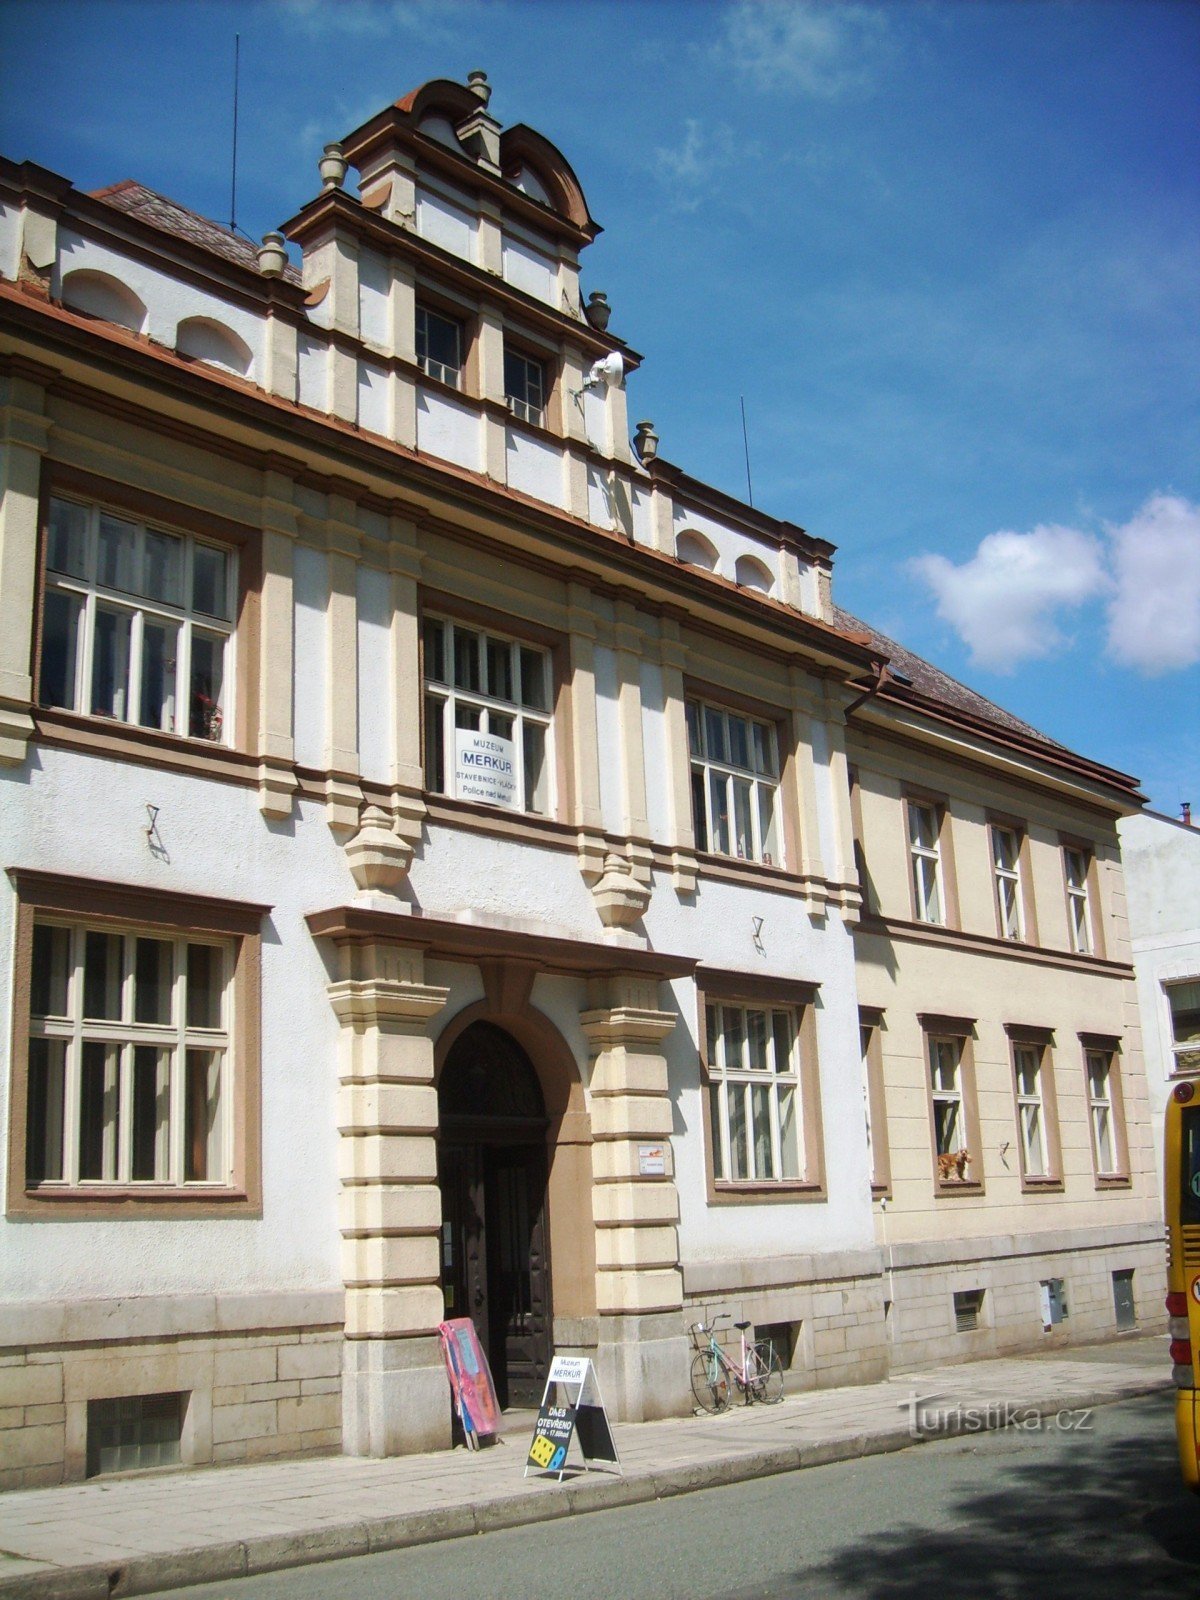 budova muzea